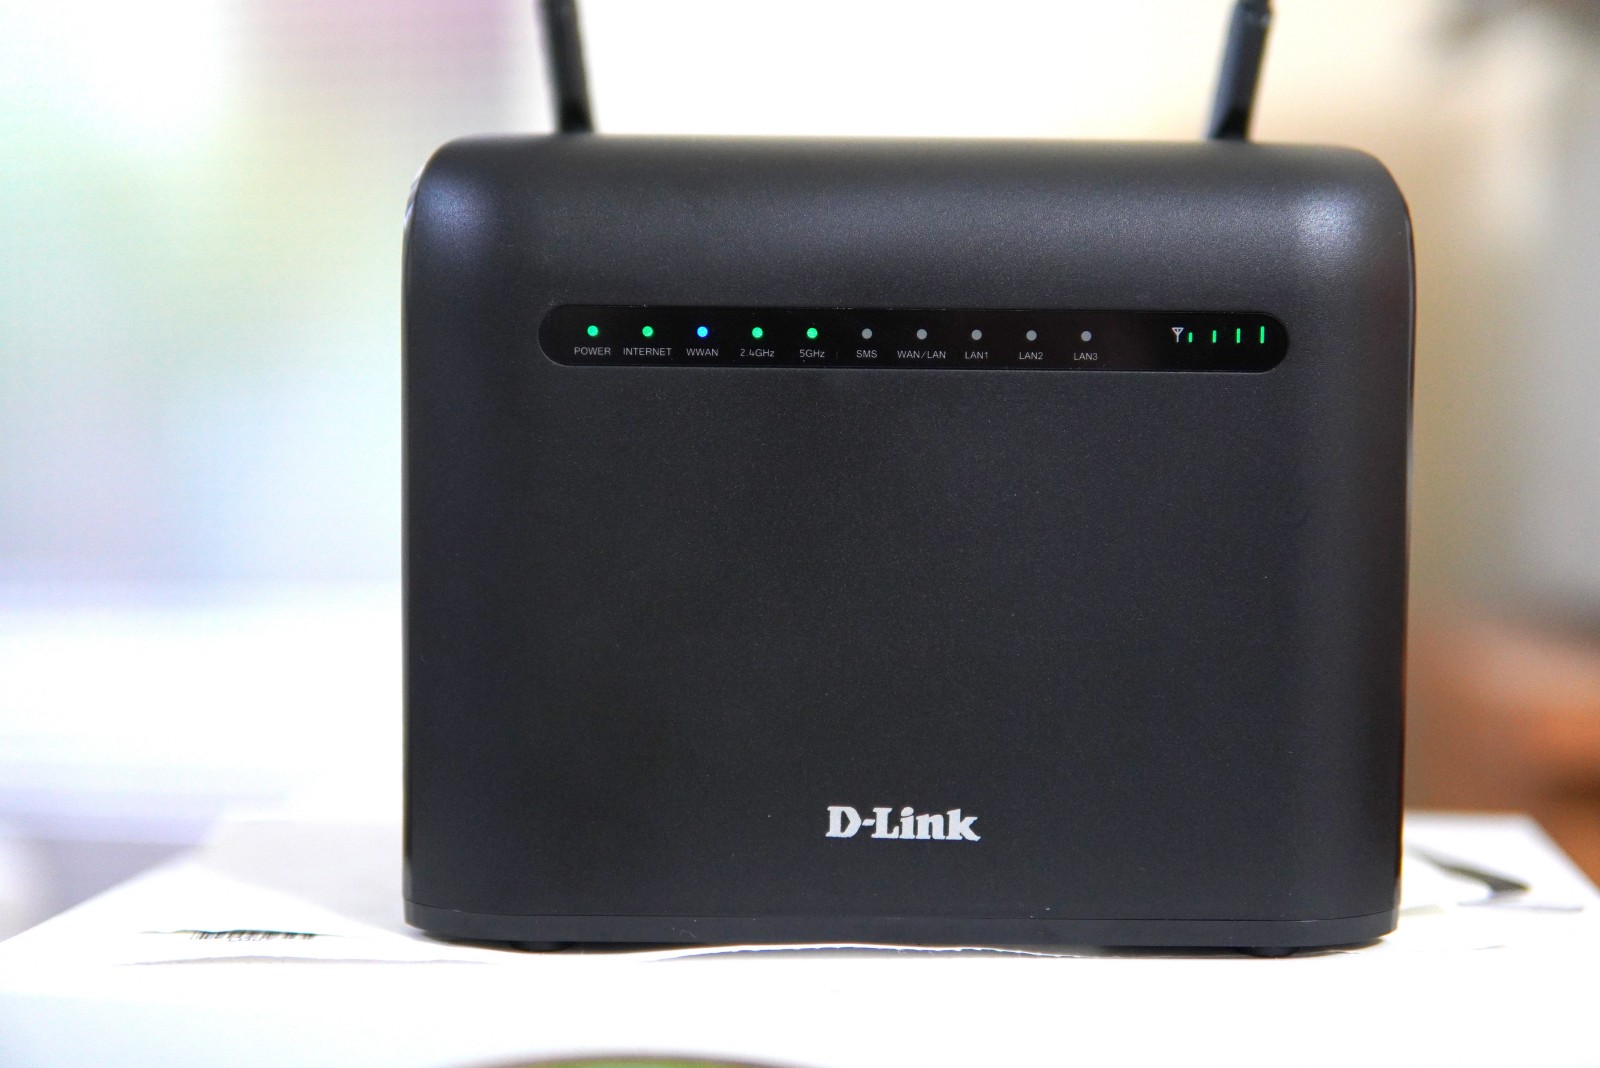 ☆【3C】世界末日救星。D-Link DWR-961 4G LTE Cat. 6 AC1200無線路由器（開箱、測速、設定步驟）